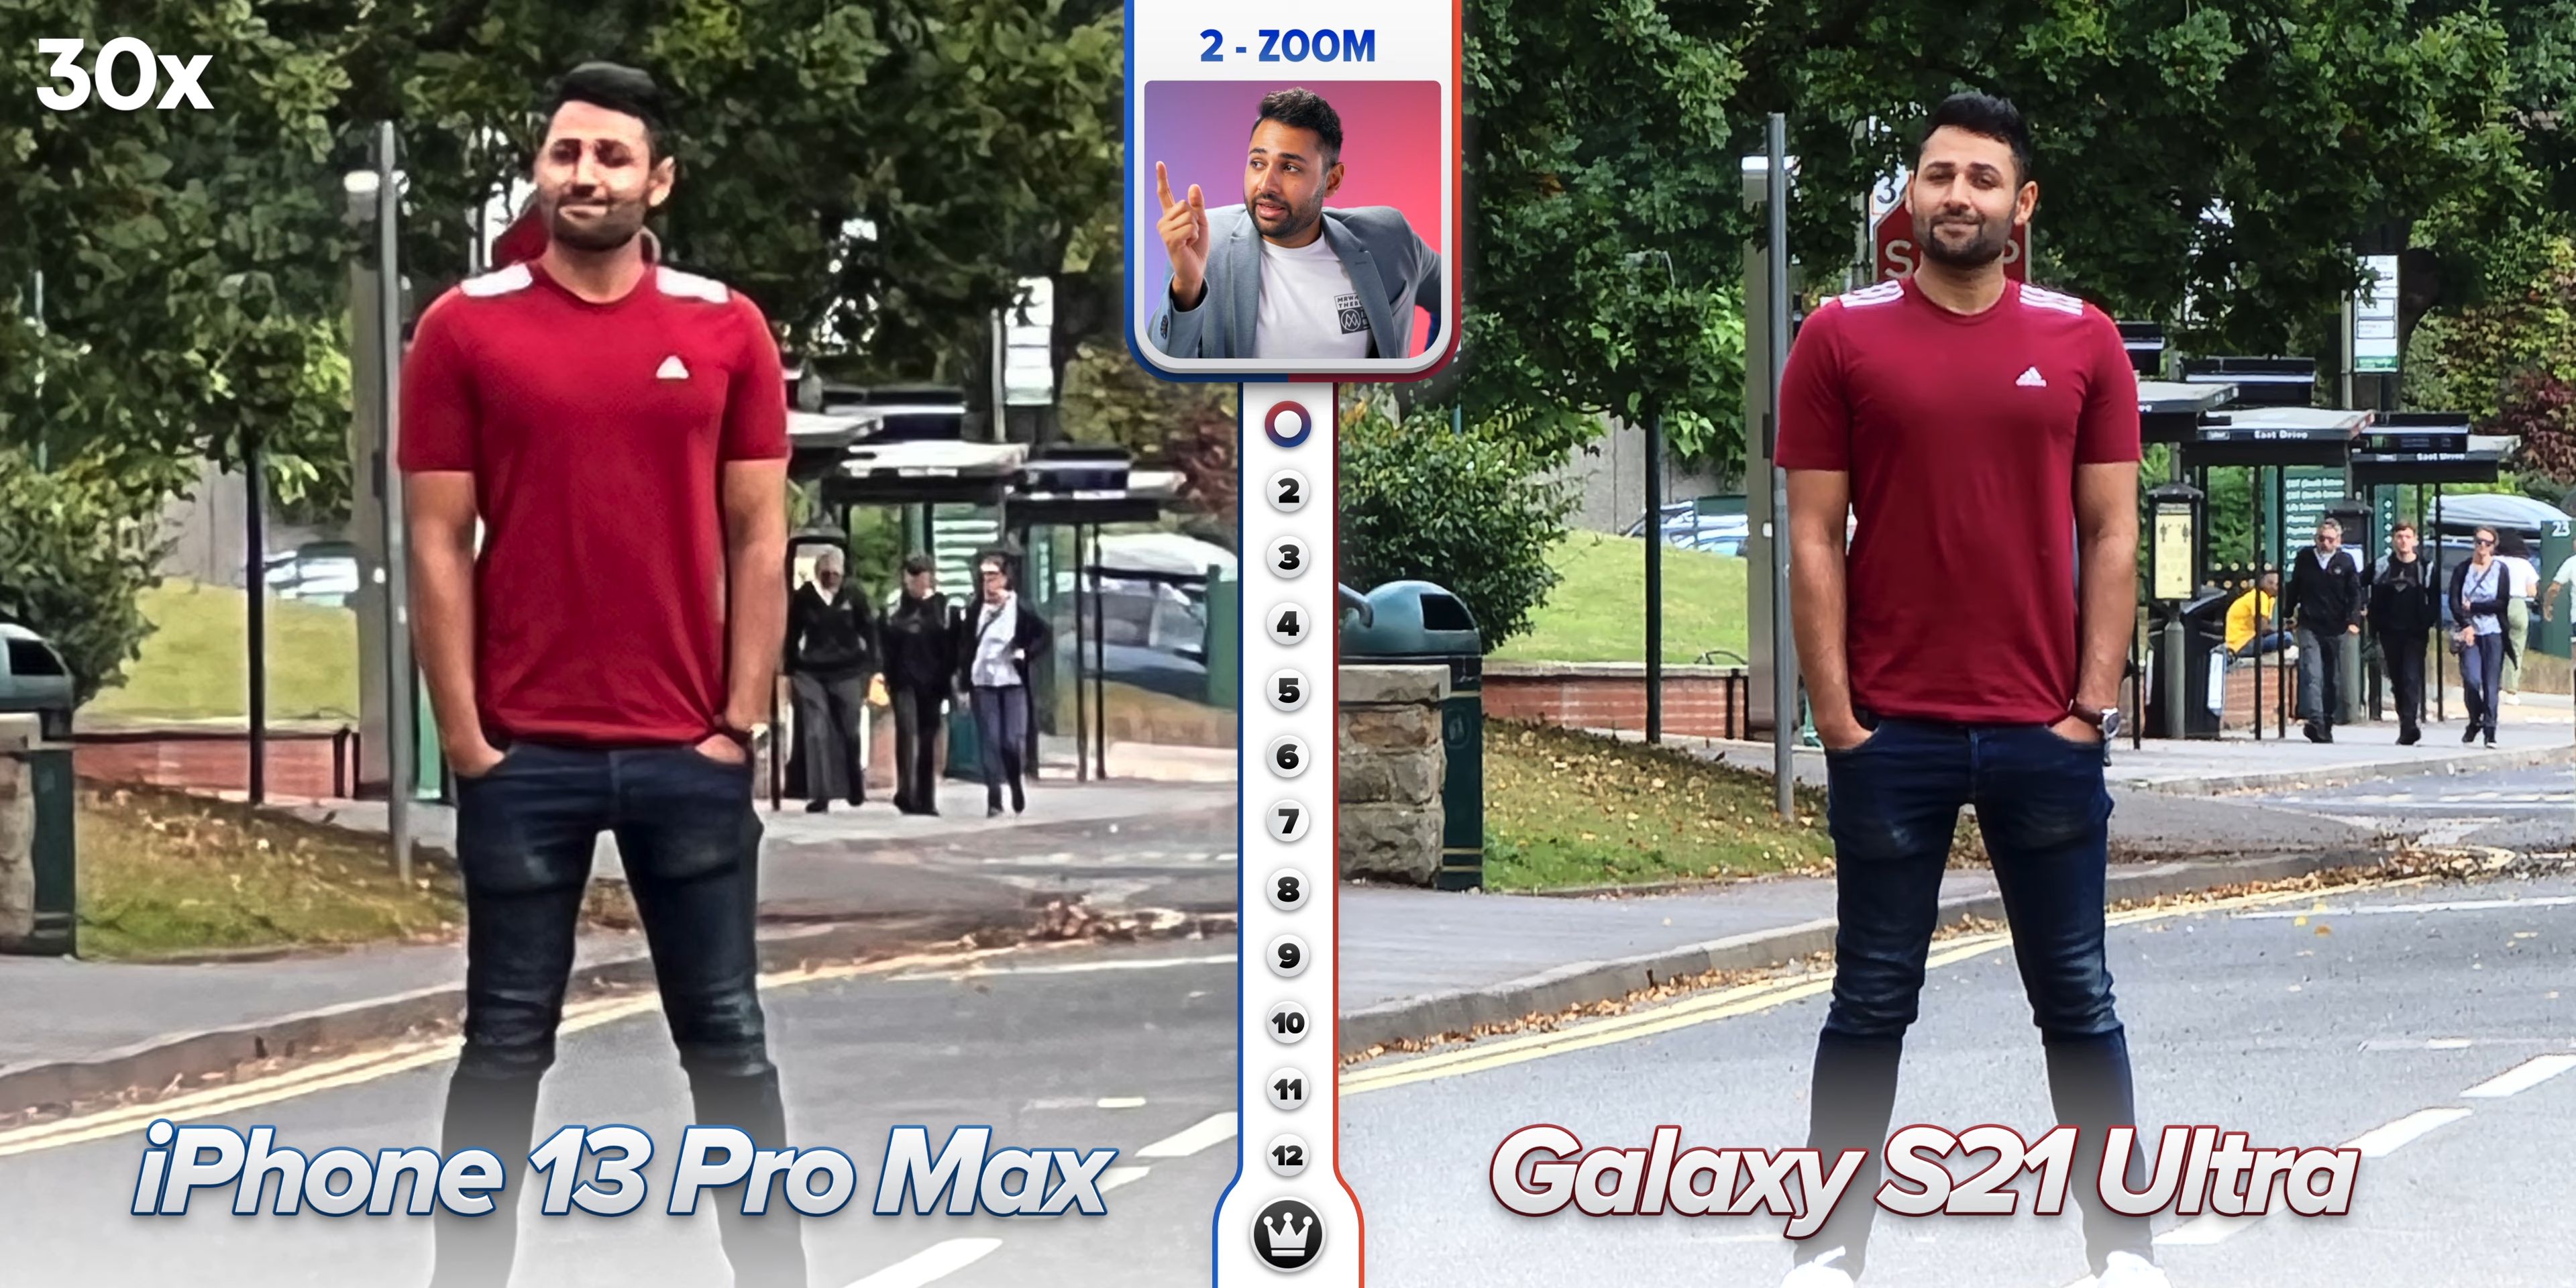 Айфон 13 про сравнение камеры. Айфон 13 и самсунг ультра камера. Iphone 13 Pro Max камера. Сравнение камер iphone 13 Pro Max. Сравнение камер iphone 13 Pro Max и Samsung Galaxy.